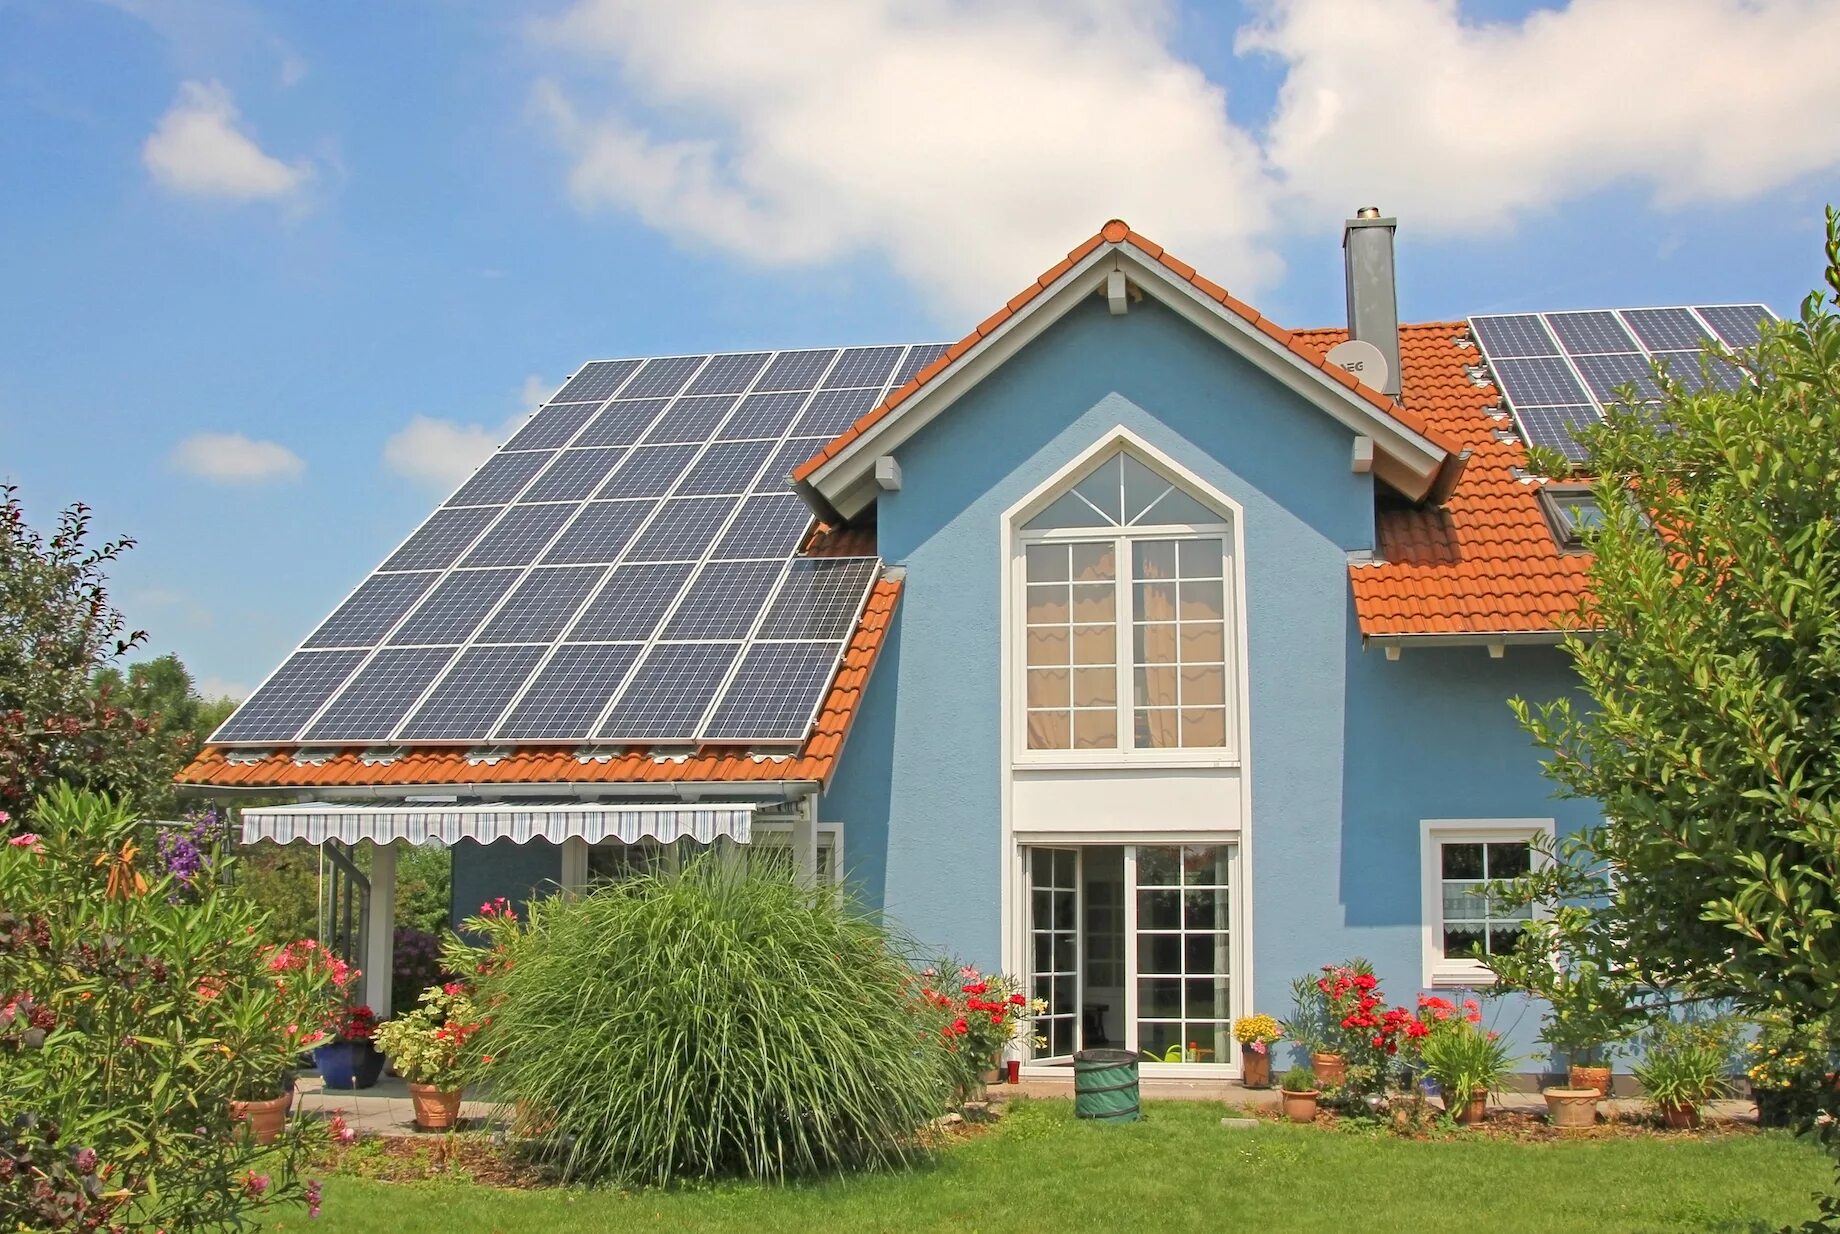 Солар Хаус. Солнечные крыши. Загородный дом с солнечными батареями. Солнечные батареи на крыше дома. Солнечный дом друзья